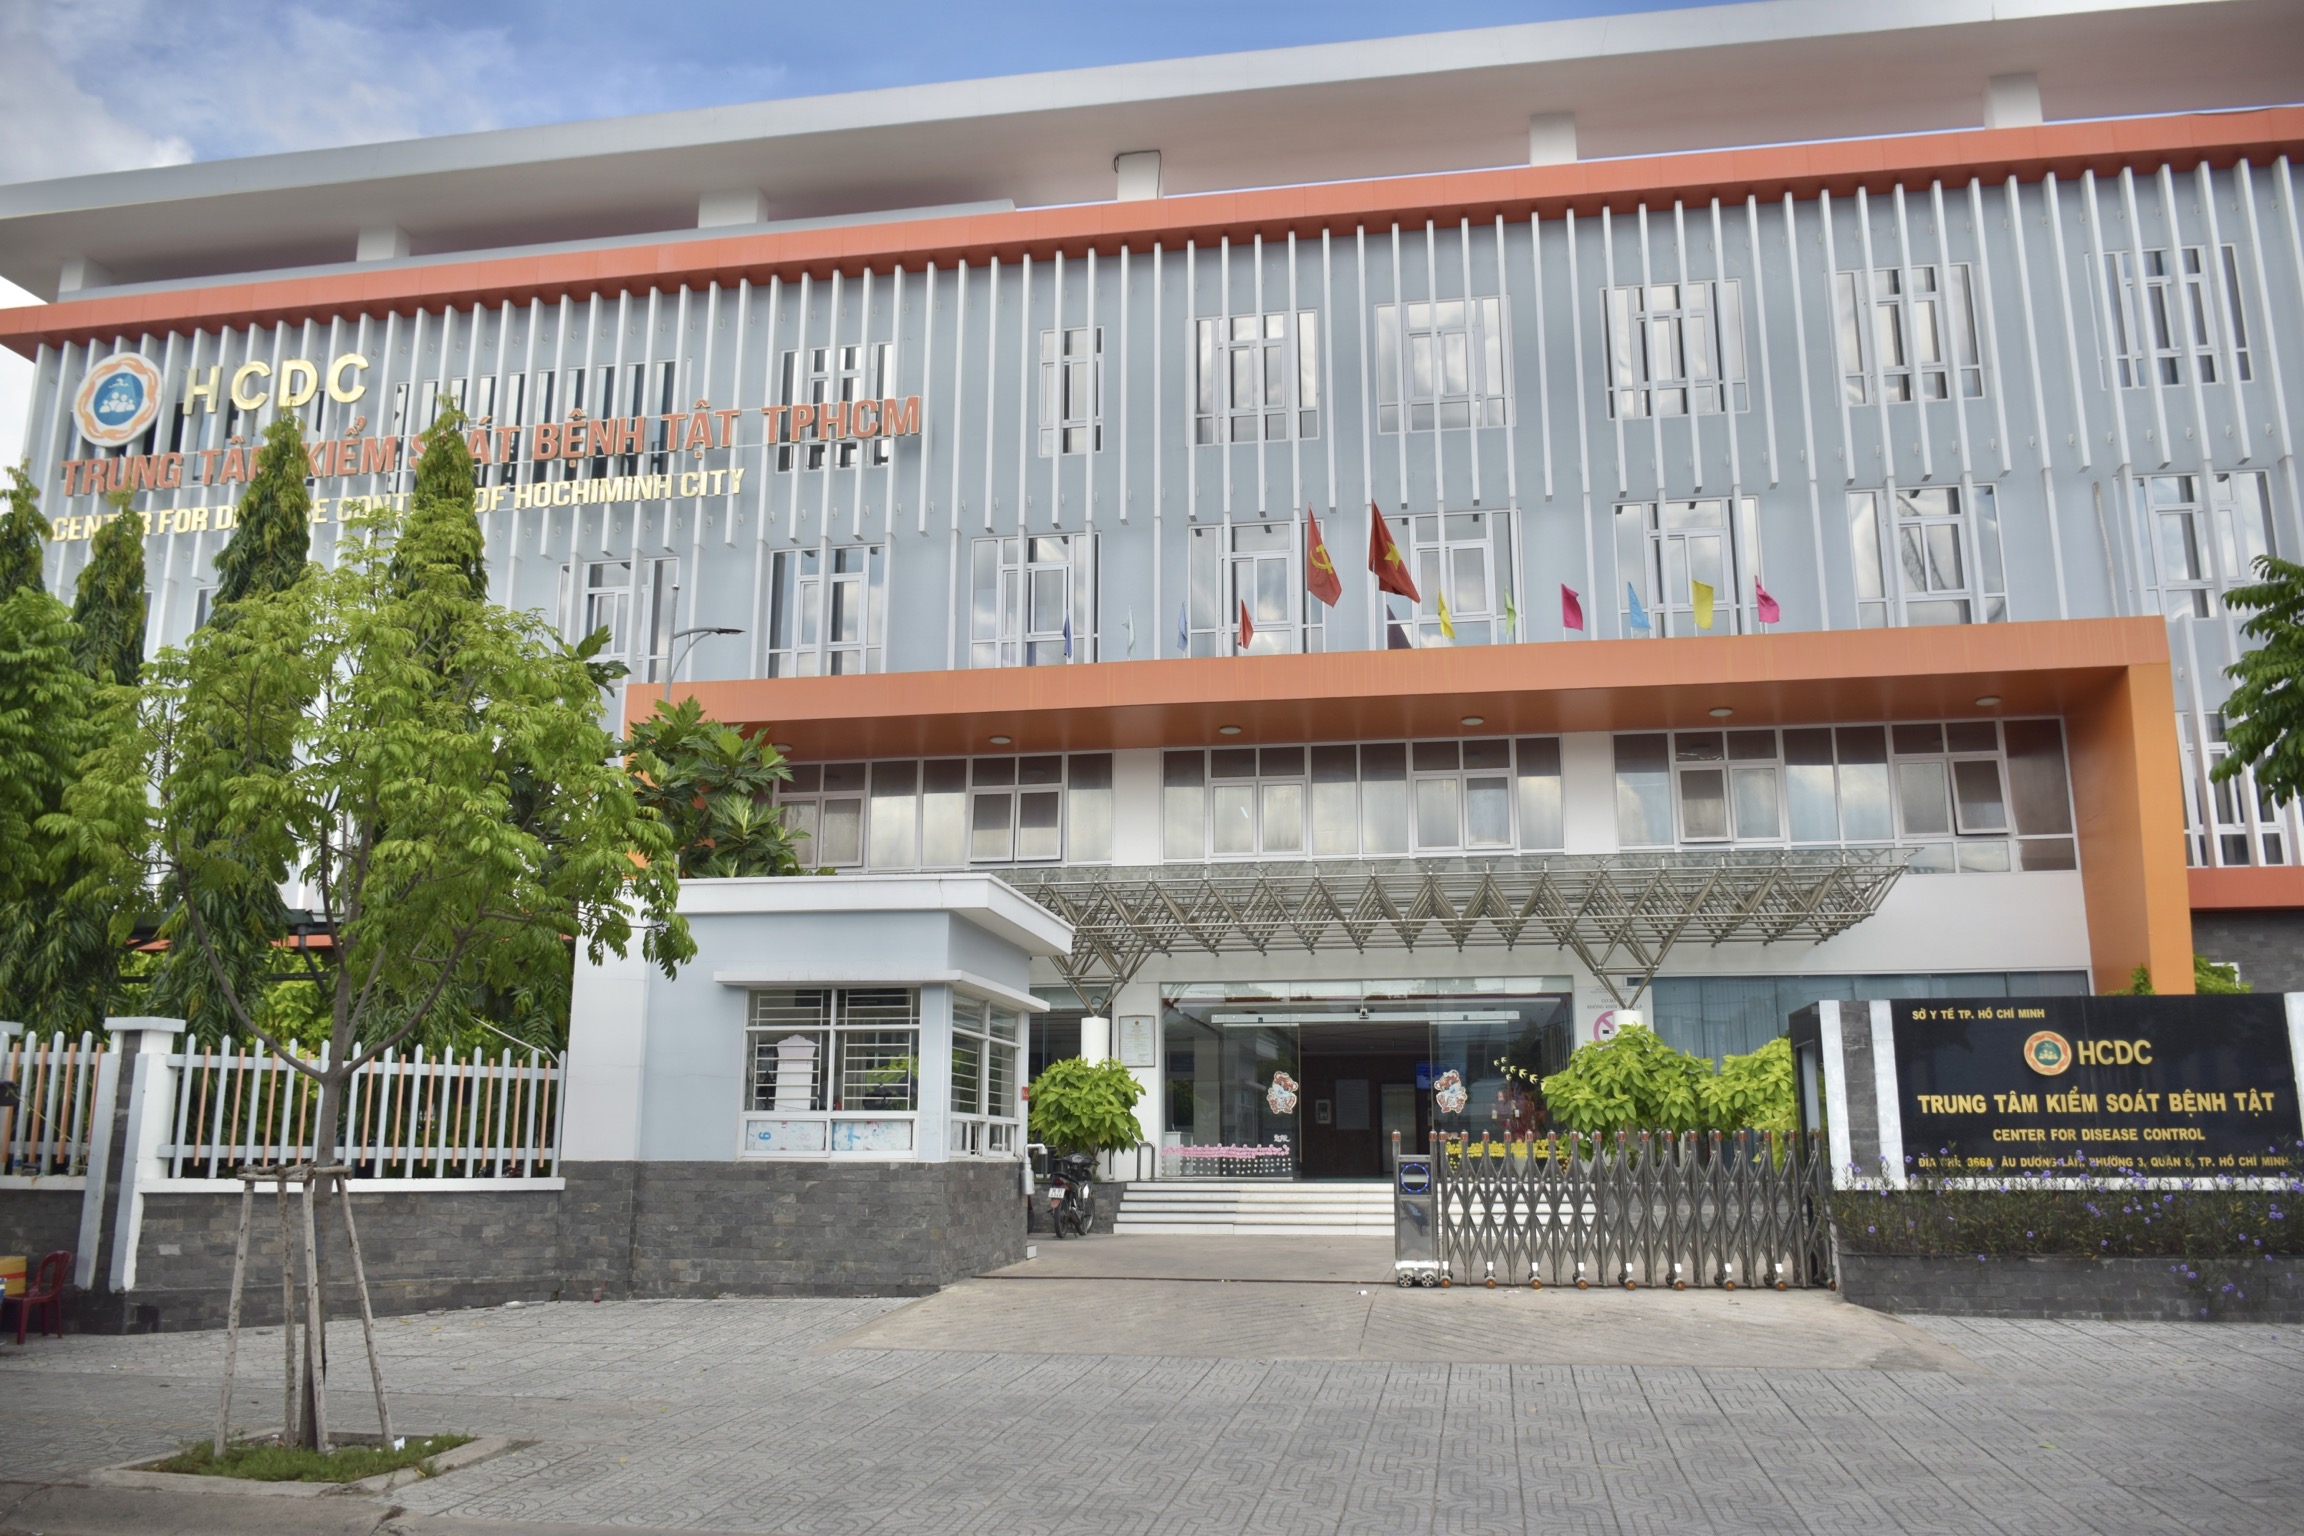 Quyết định Về việc cấp mã cơ sở đào tạo liên tục cho Trung tâm Kiểm soát bệnh tật Thành phố Hồ Chí Minh trực thuộc Sở Y tế Thành phố Hồ Chí Minh